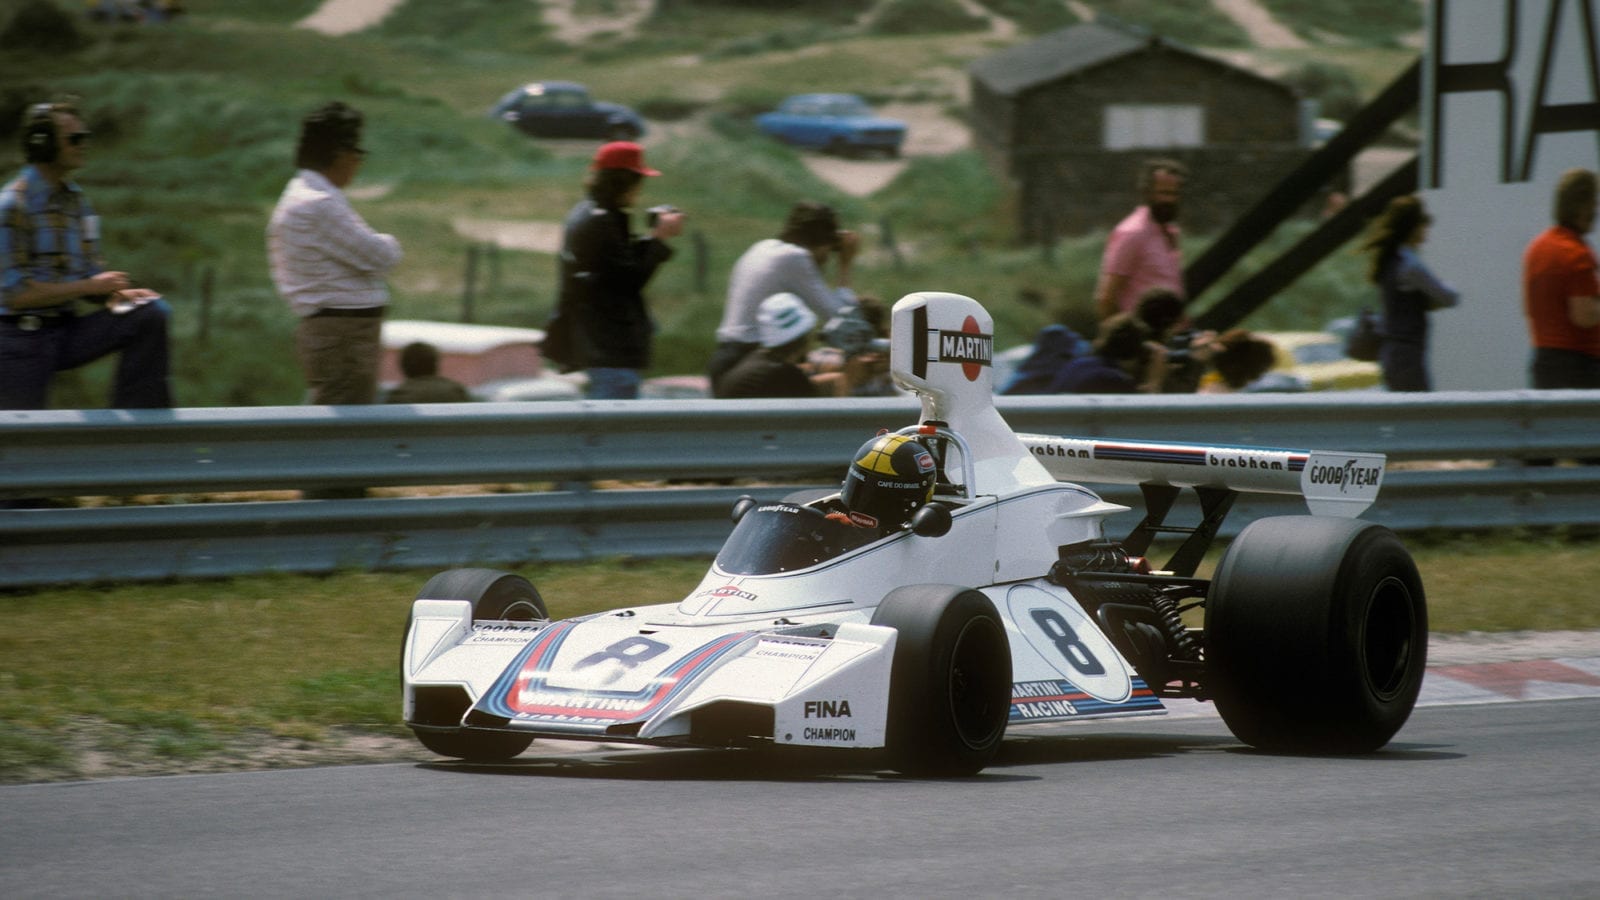 Carlos Pace in the 1975 Dutch Grand Prix at Zandvoort